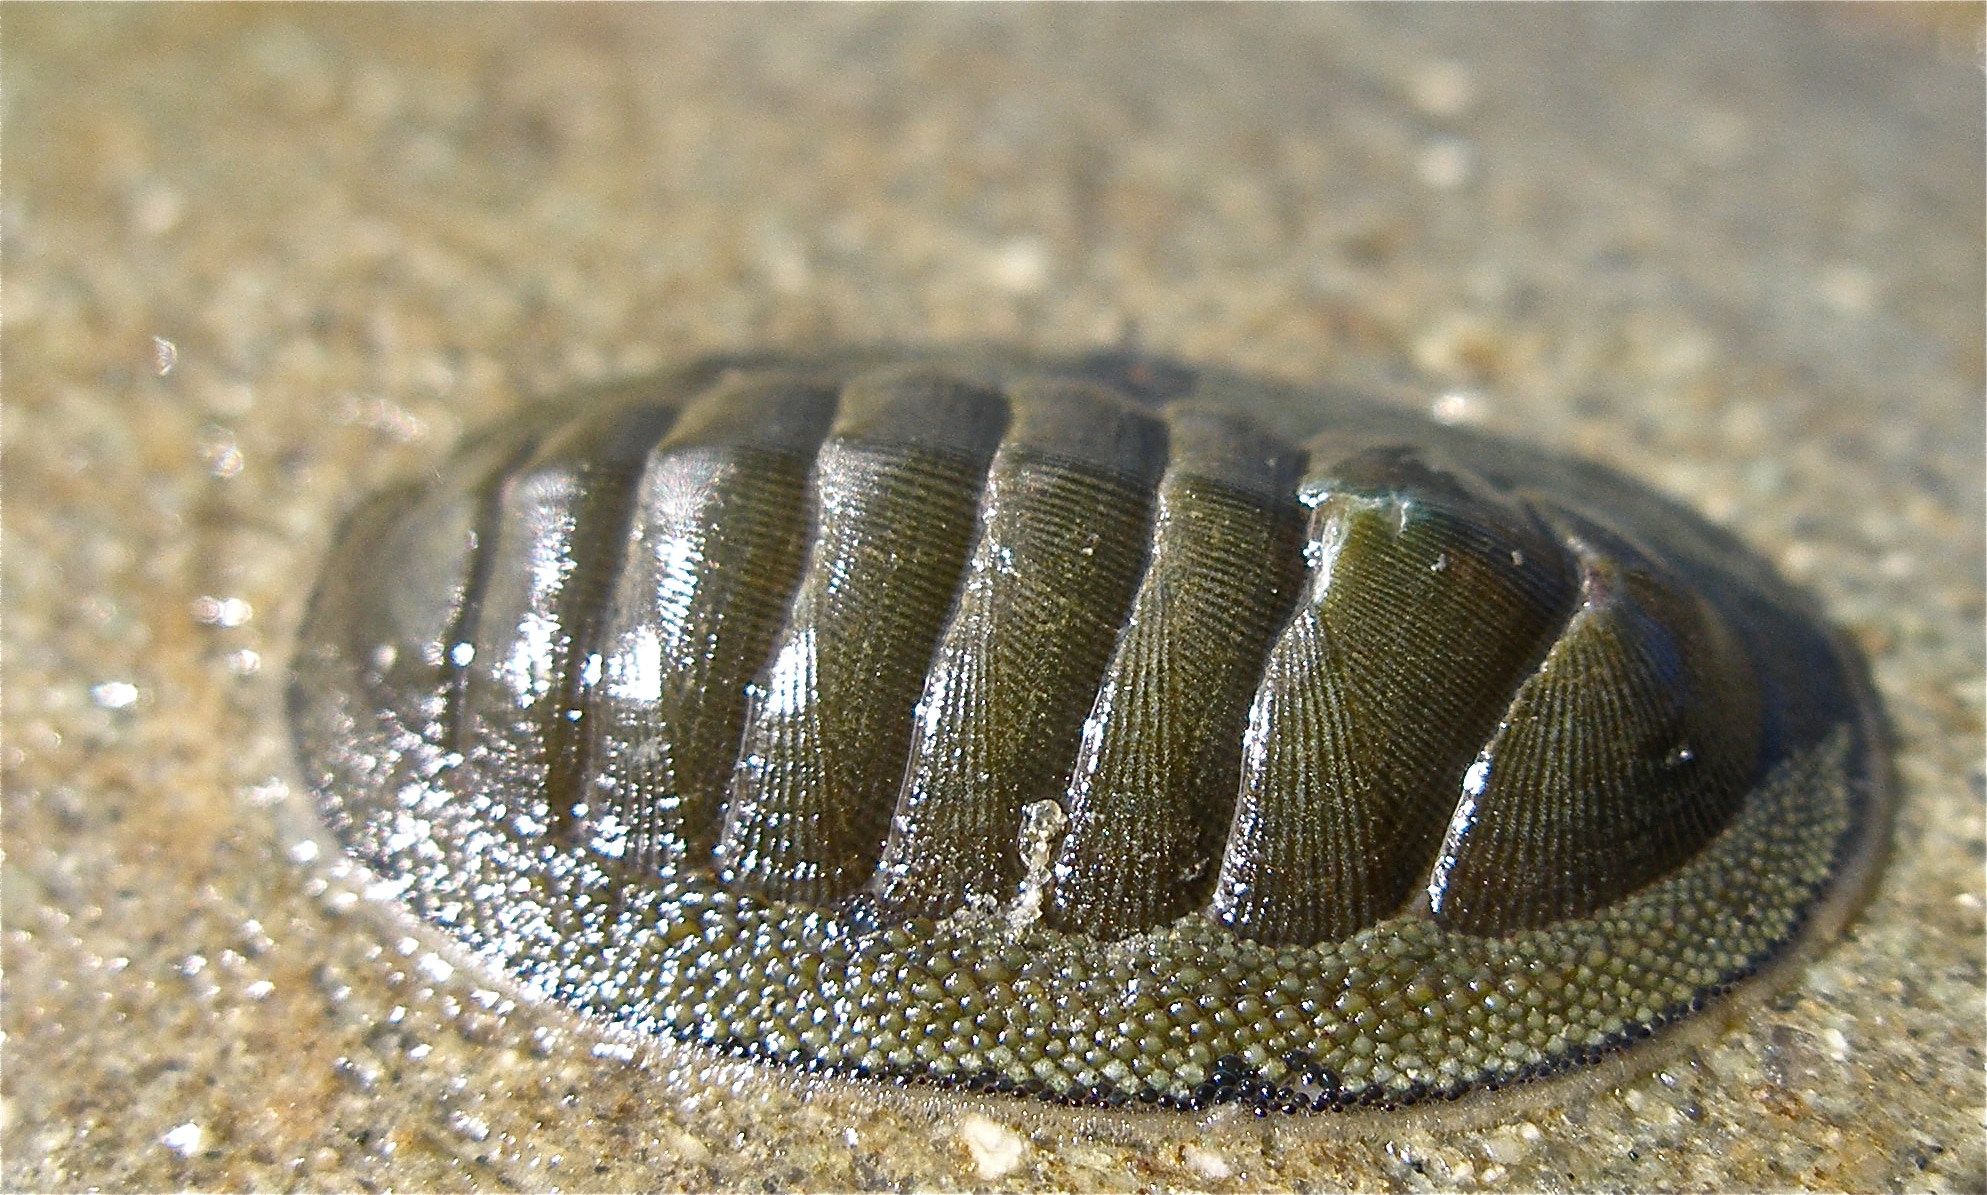 cucaracha de mar 